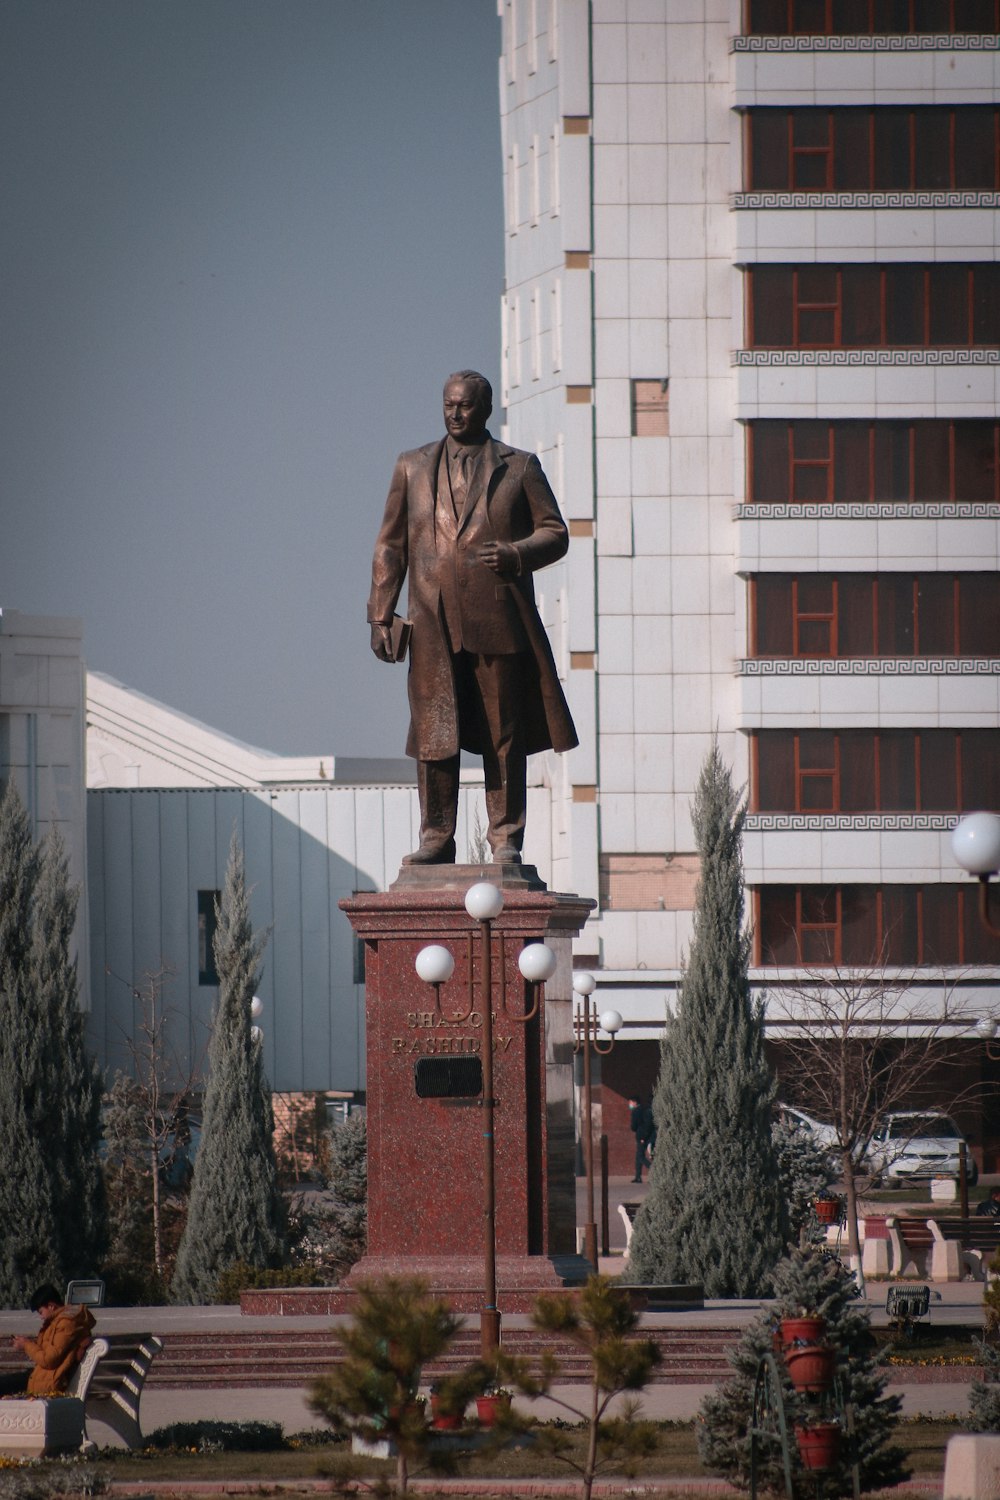 a statue of a man in a suit is in front of a building